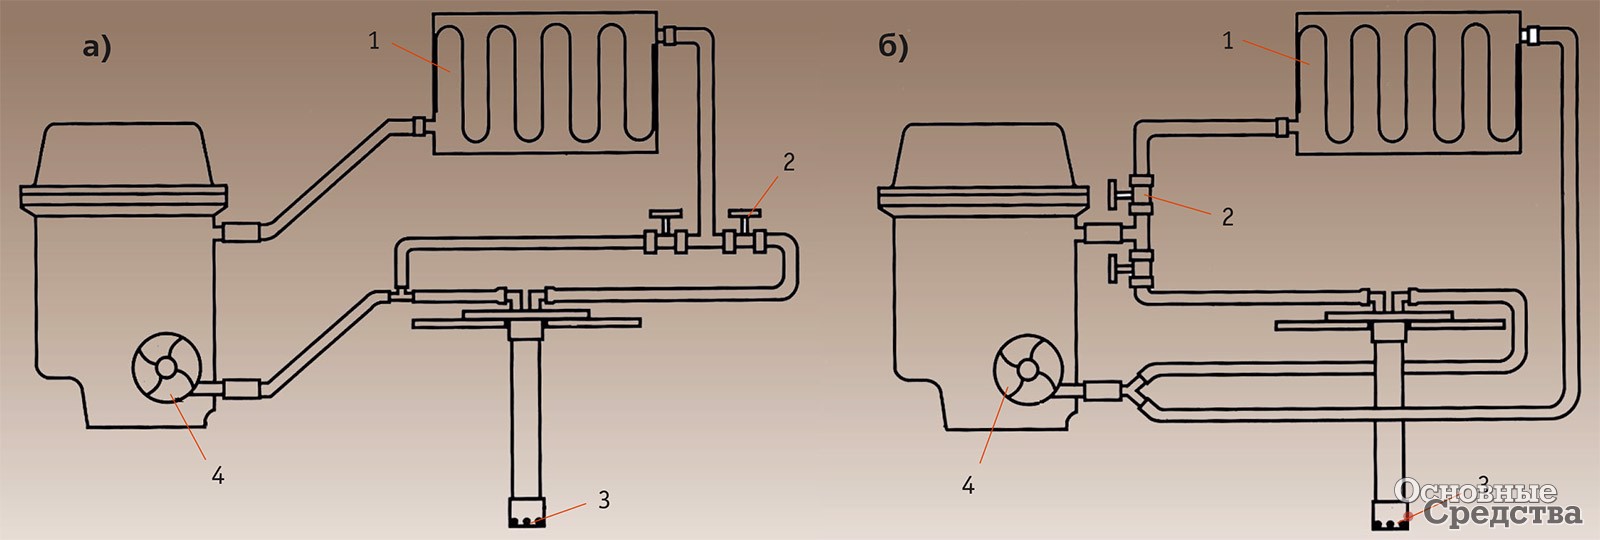 [b]Схемы подключения системы «Номакон ТП-16/200» к радиатору отопителя для подогрева топлива последовательно (а) и параллельно (б):[/b] 1 – радиатор отопителя; 2 – система кранов управления подогревом; 3 – приемный стакан топливозаборника; 4 – насос охлаждающей жидкости